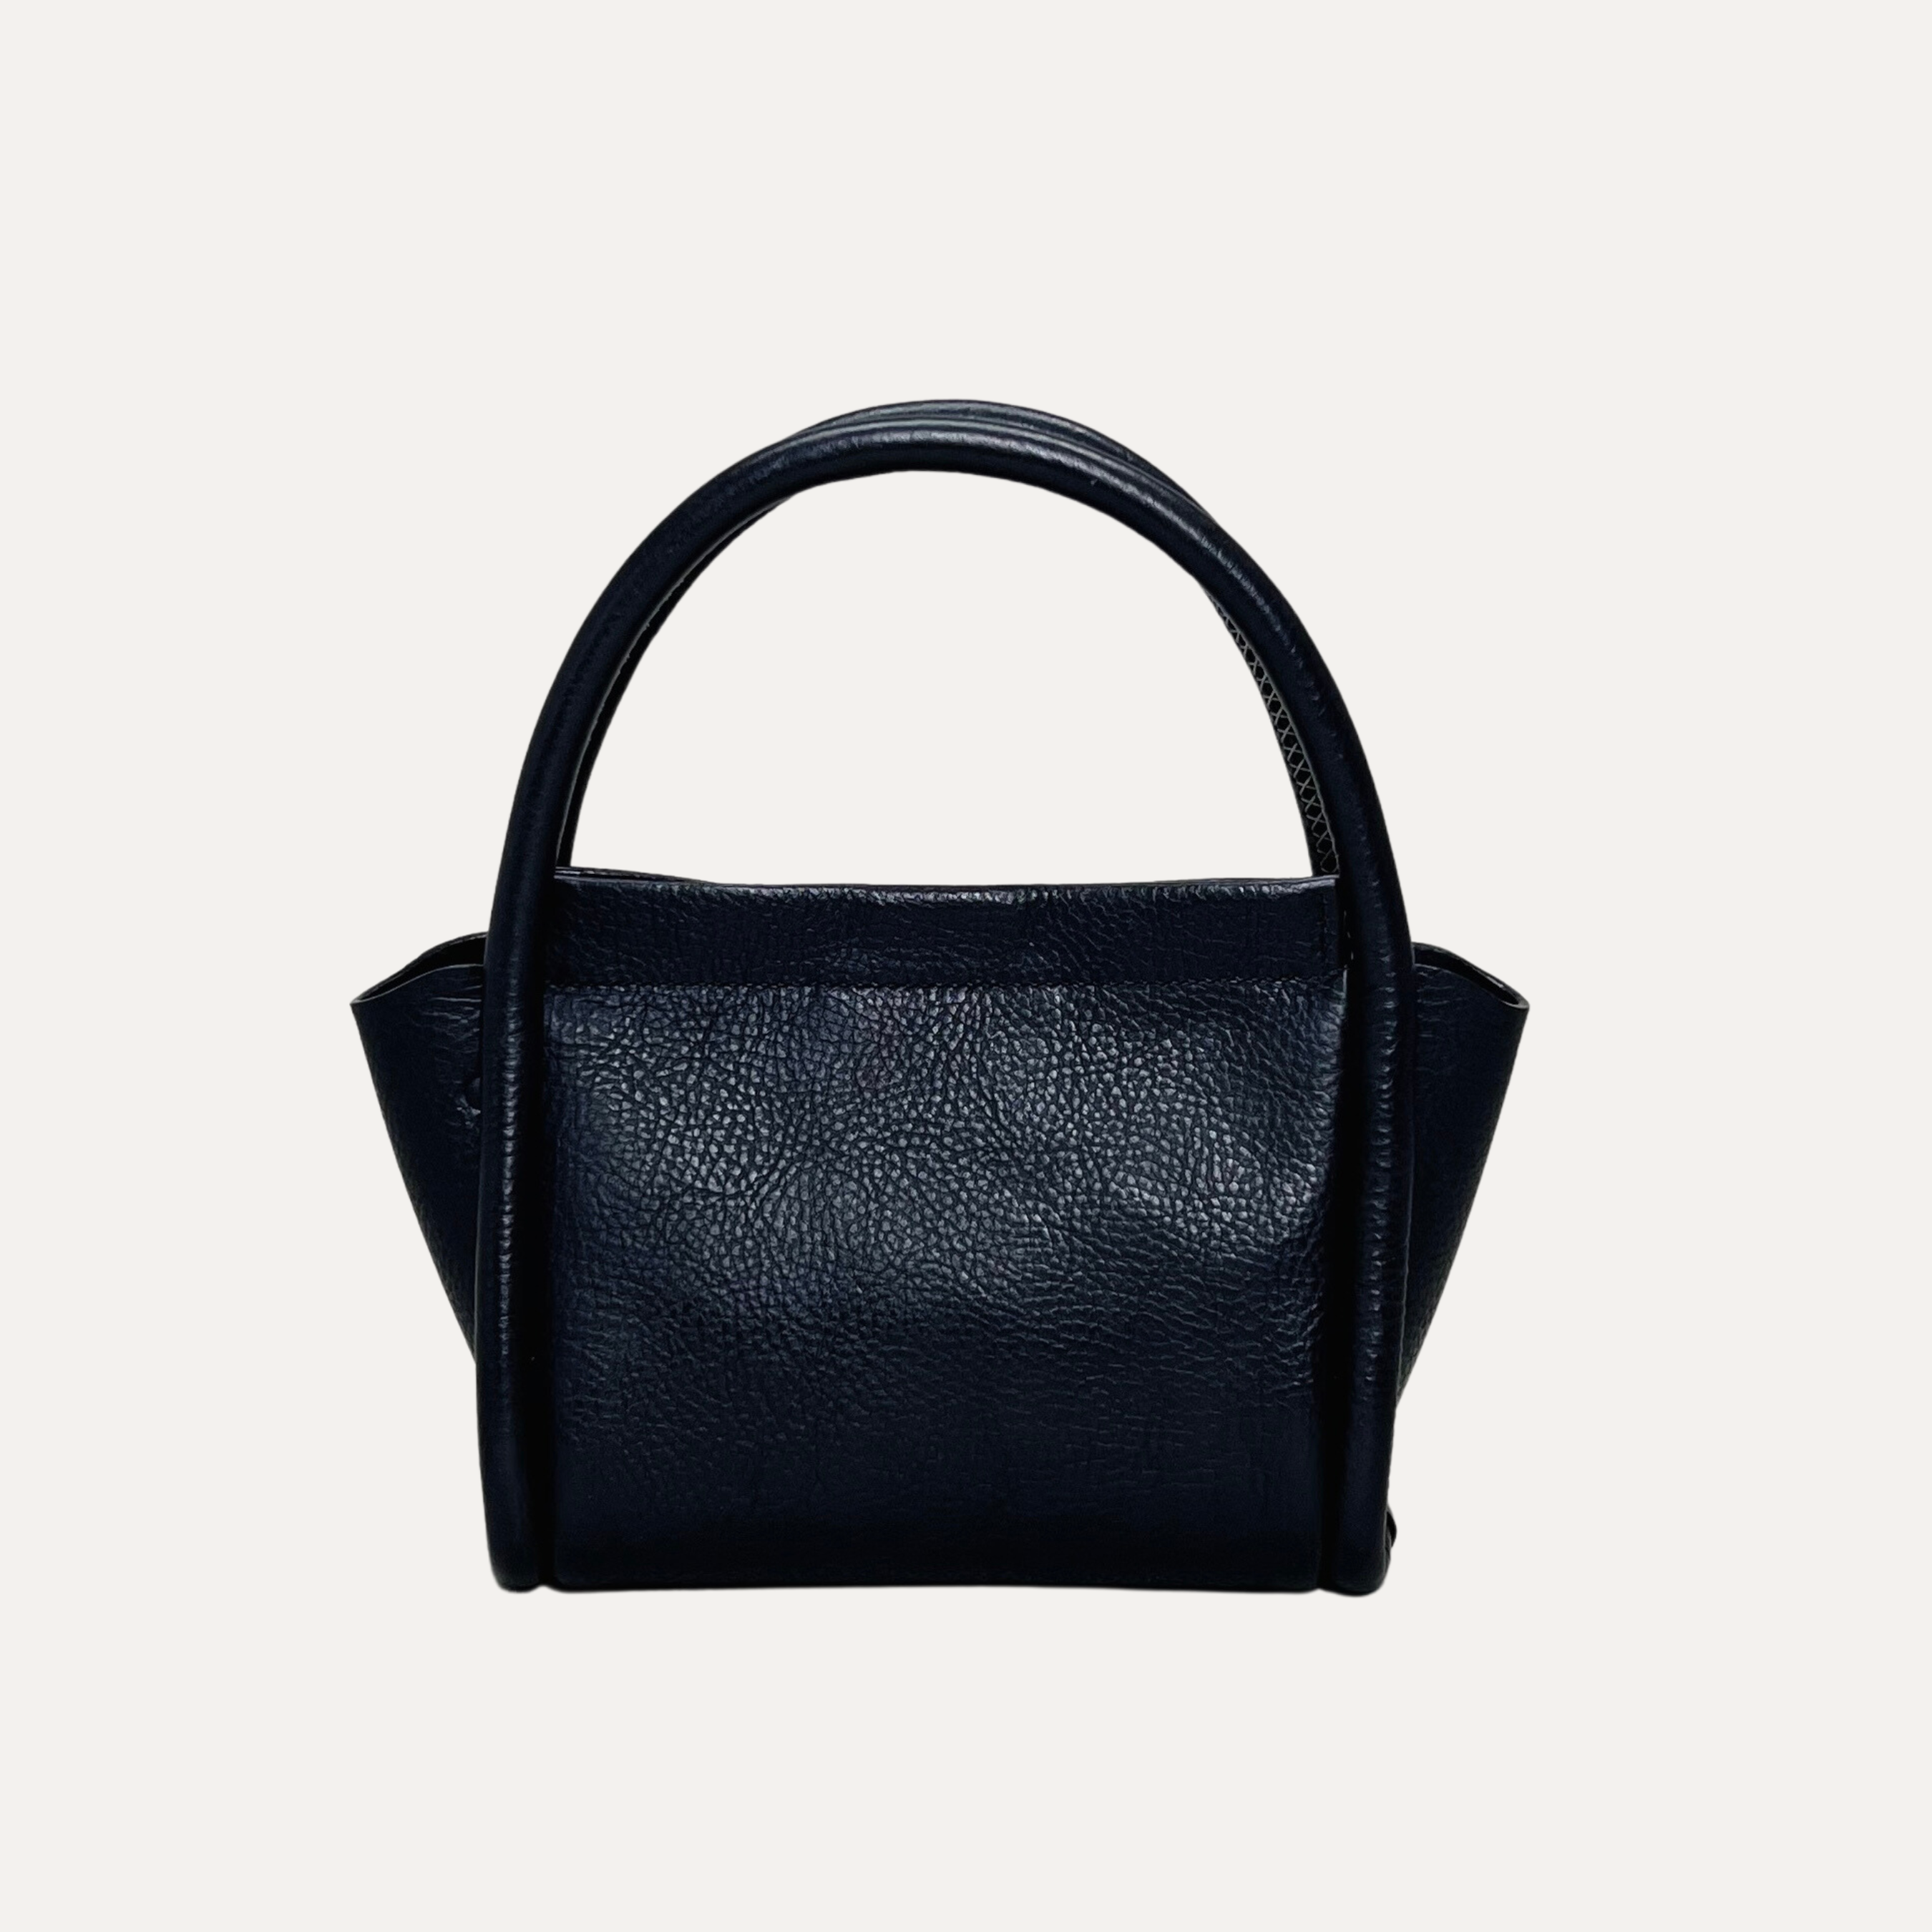 Luxury Pebbled Black Leather Handbag made in Australia